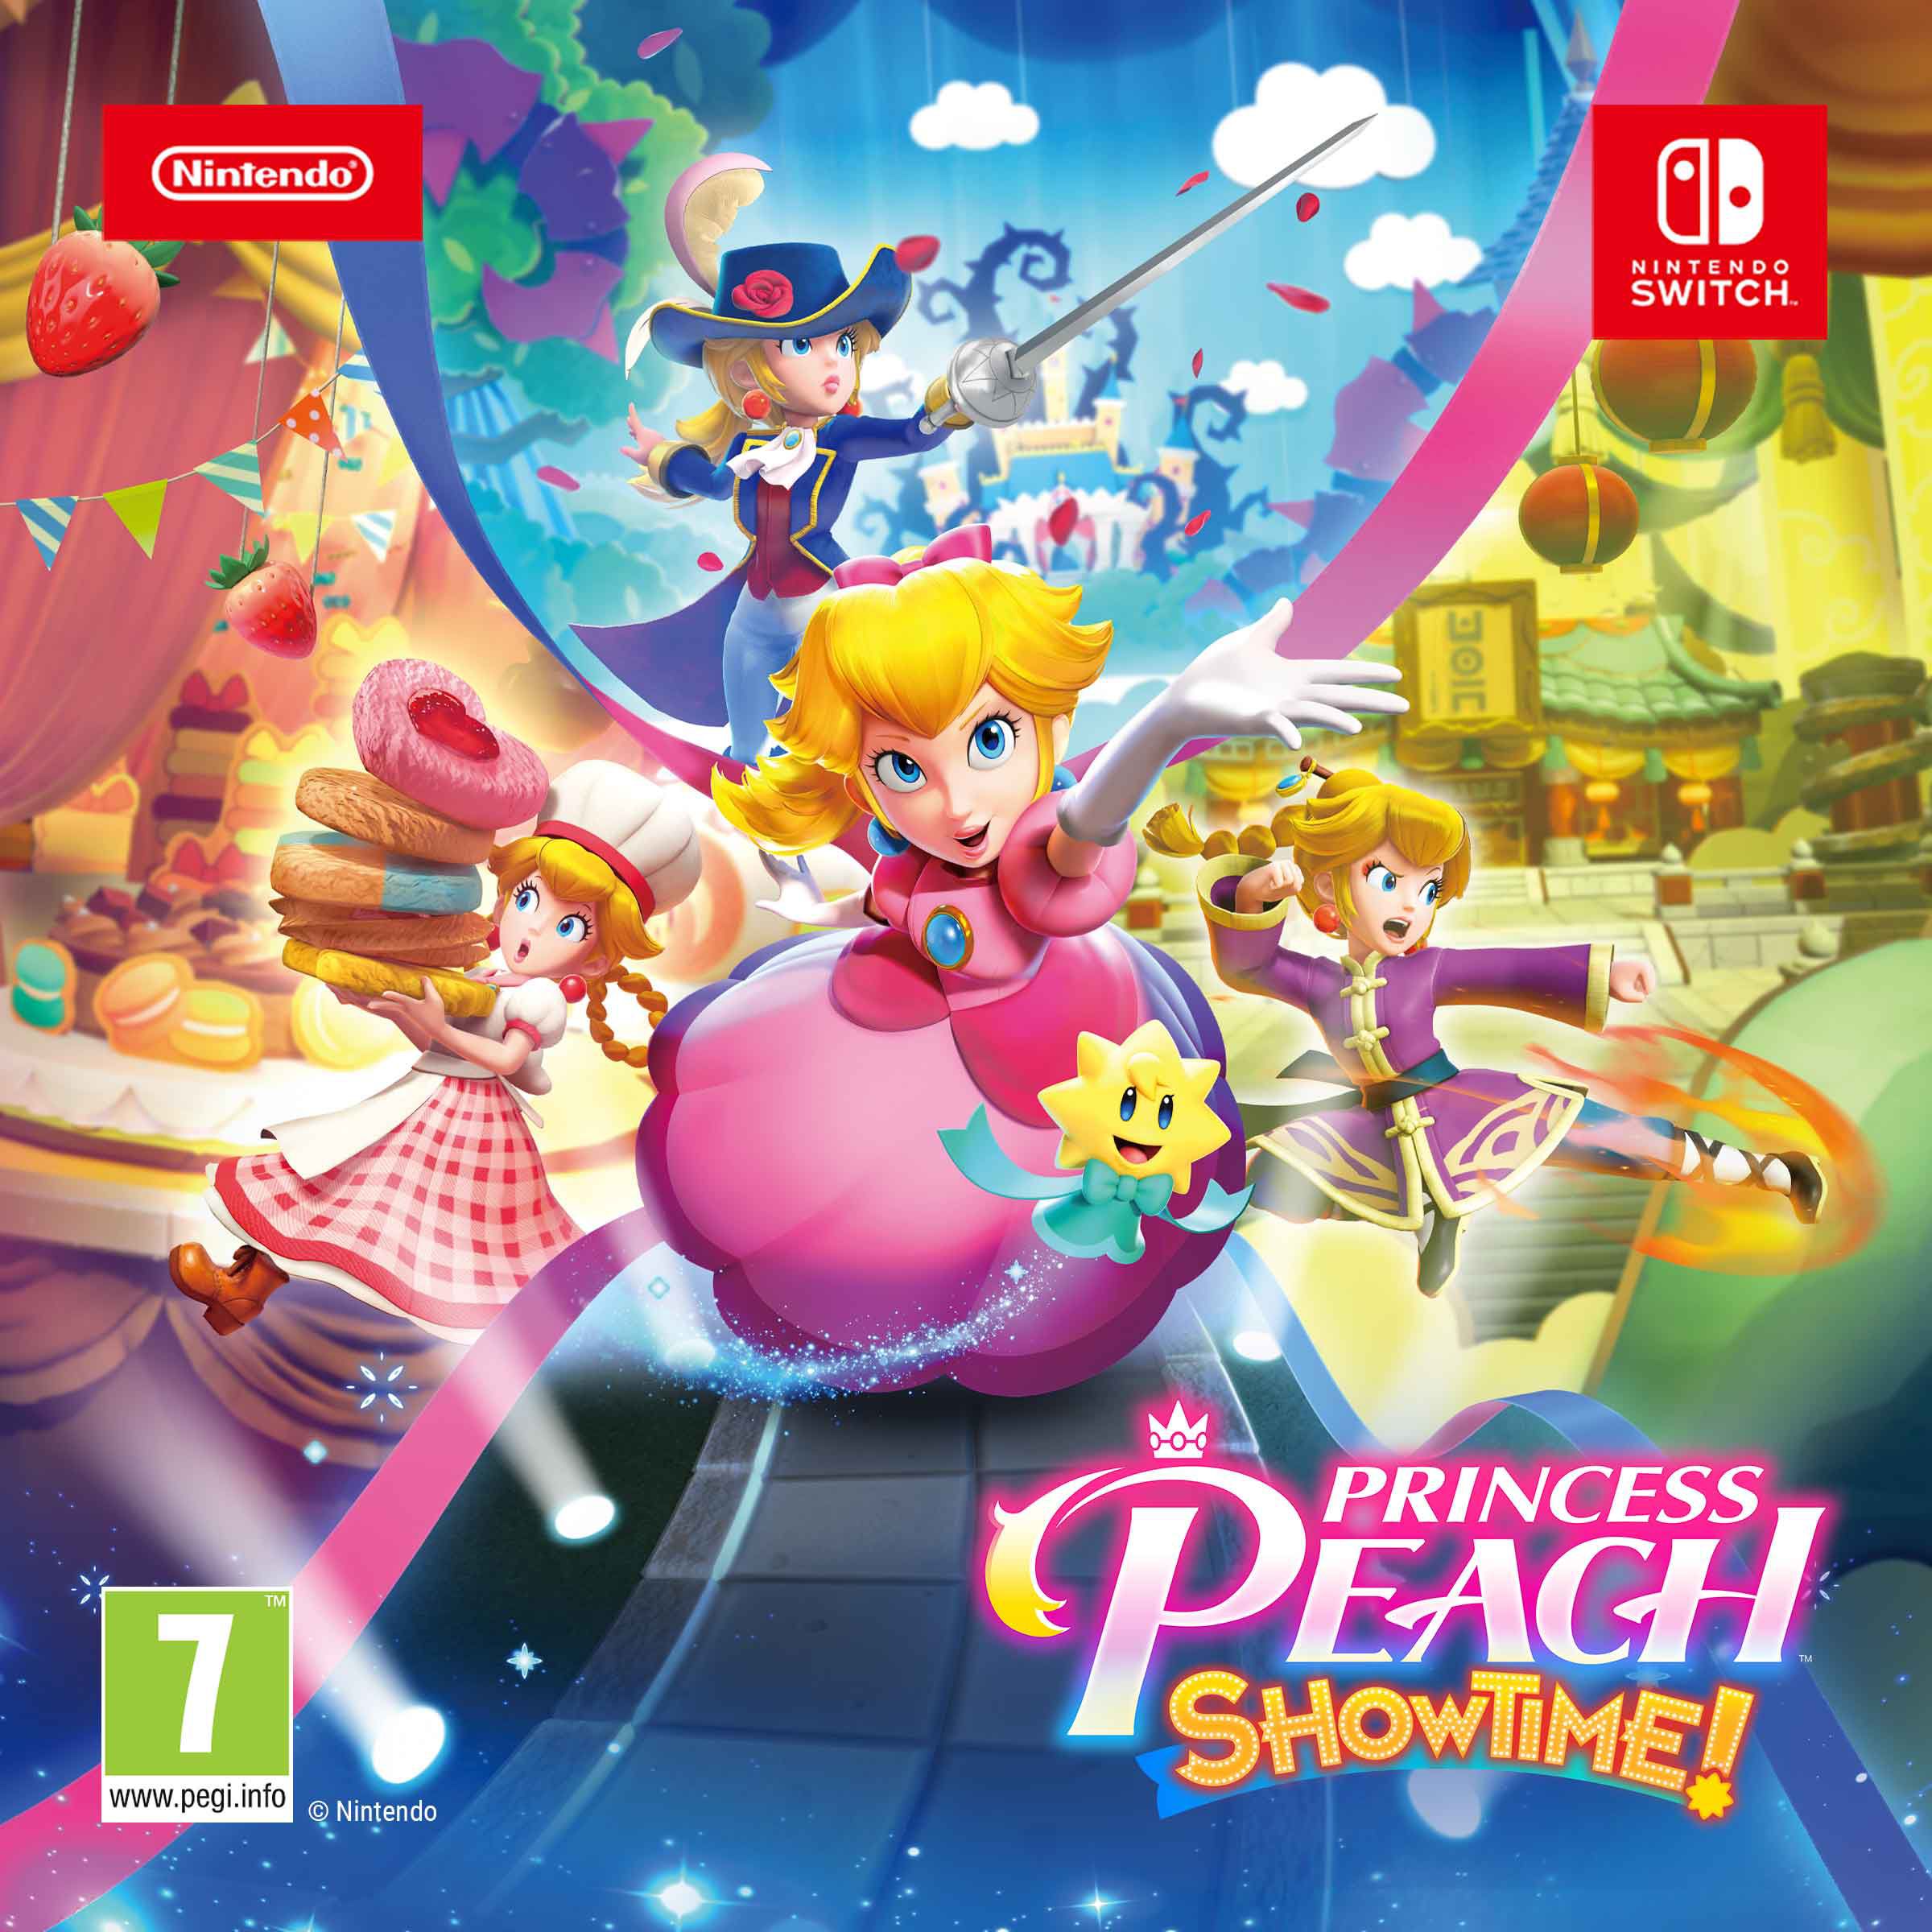 Princess Peach: Showtime! Video game